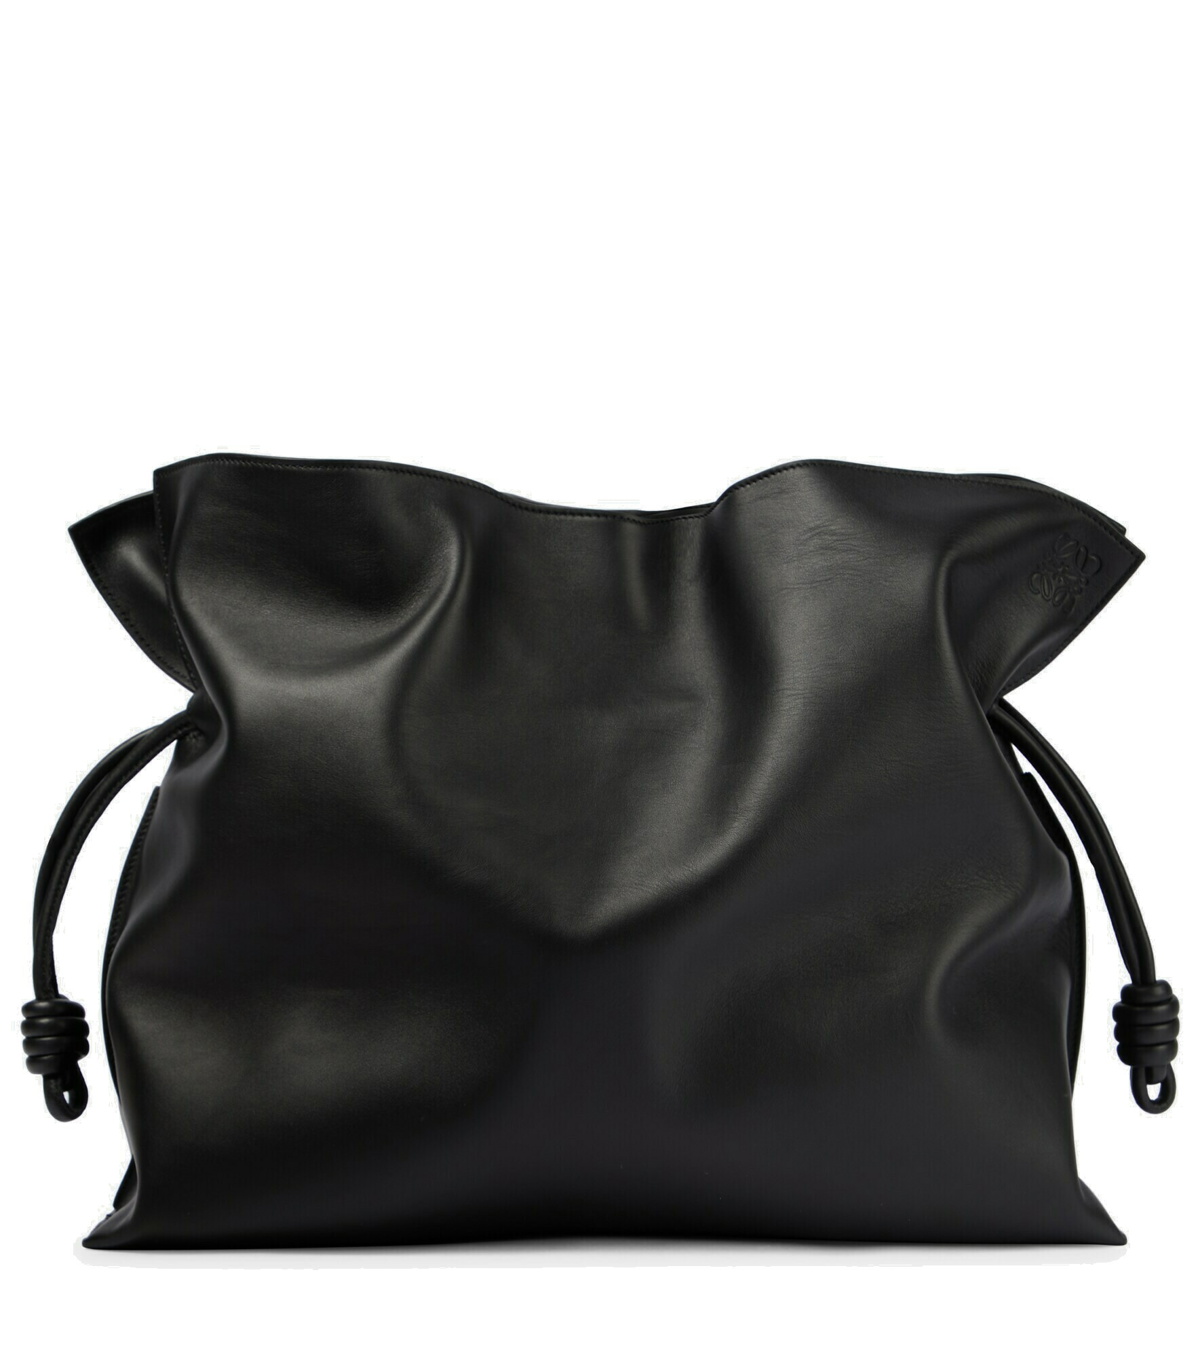 Loewe - Flamenco XL leather shoulder bag Loewe